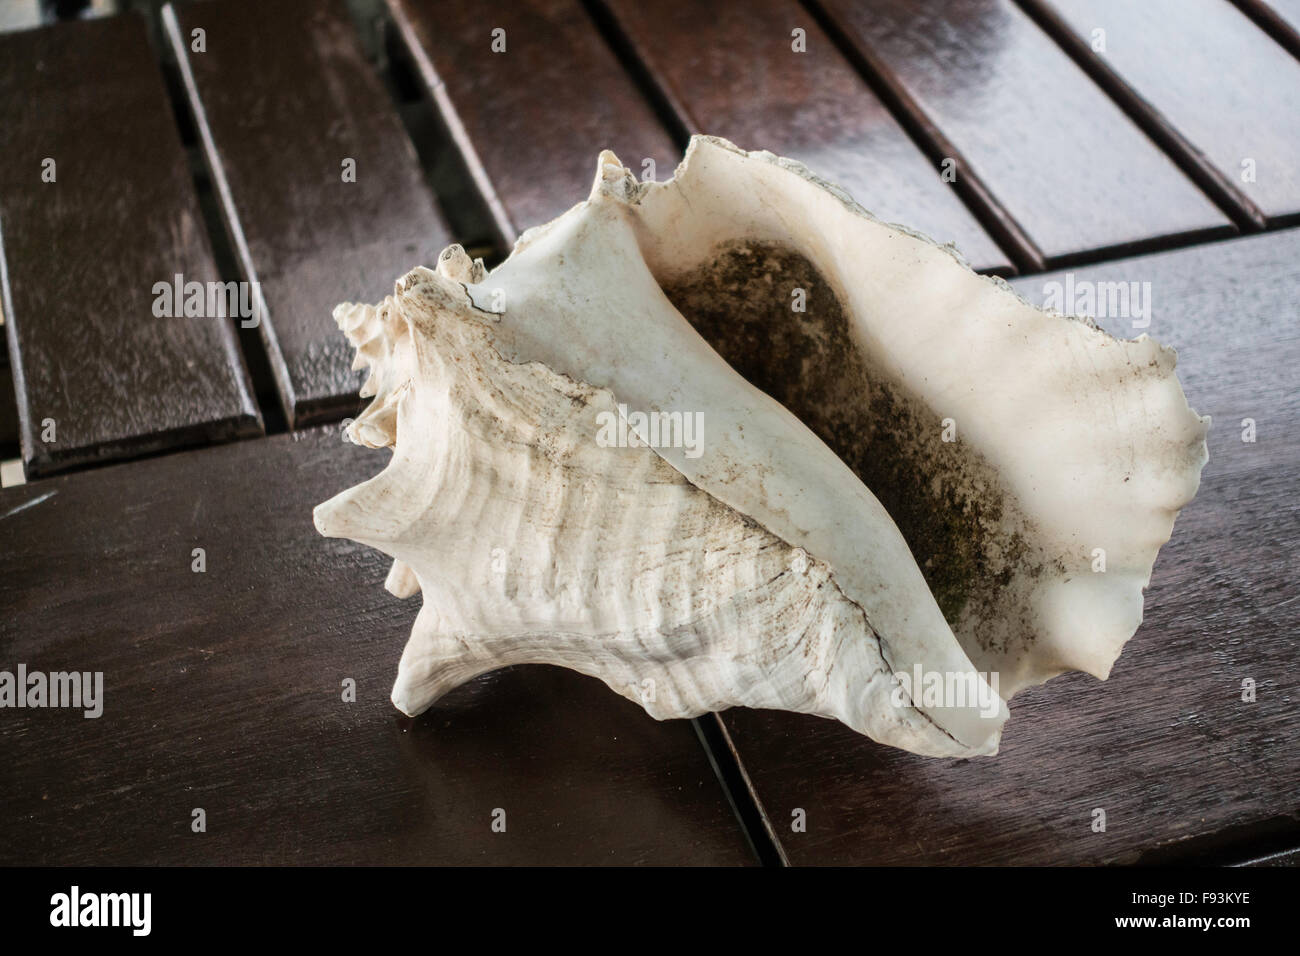 Une coquille de conque allongée sur une table en bois dans la région de Sainte Croix, Îles Vierges des États-Unis. USVI, U.S.V.I. Banque D'Images